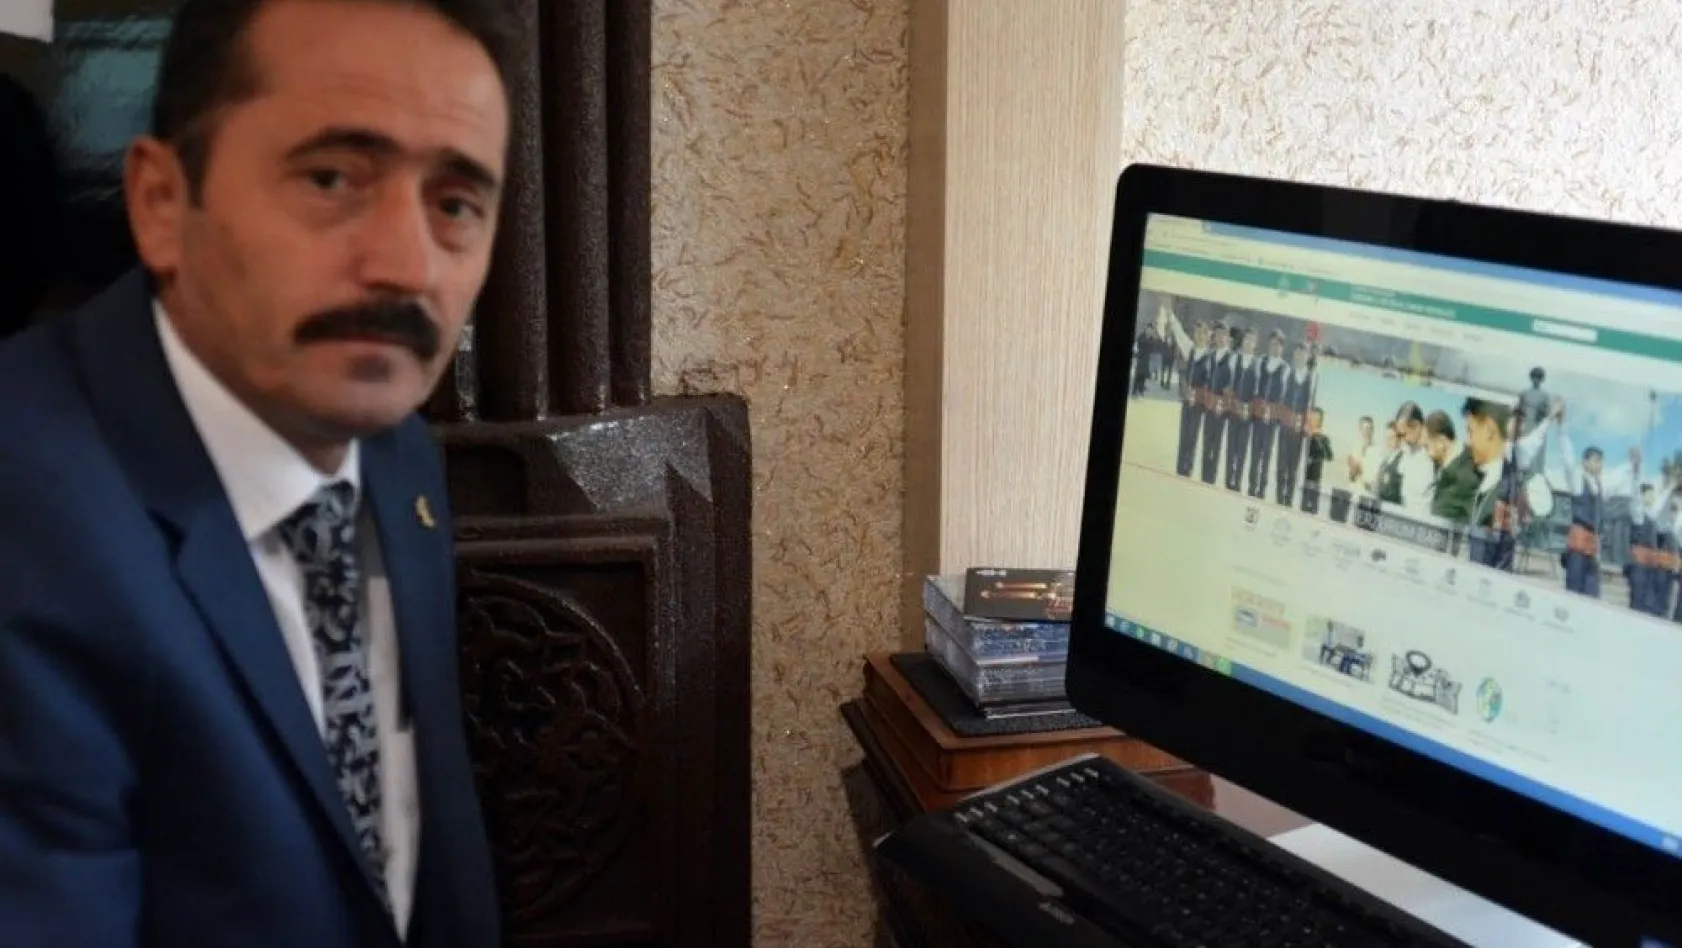 Erzurum İl Kültür ve Turizm Müdürlüğü'nün web sitesi yayına başladı
